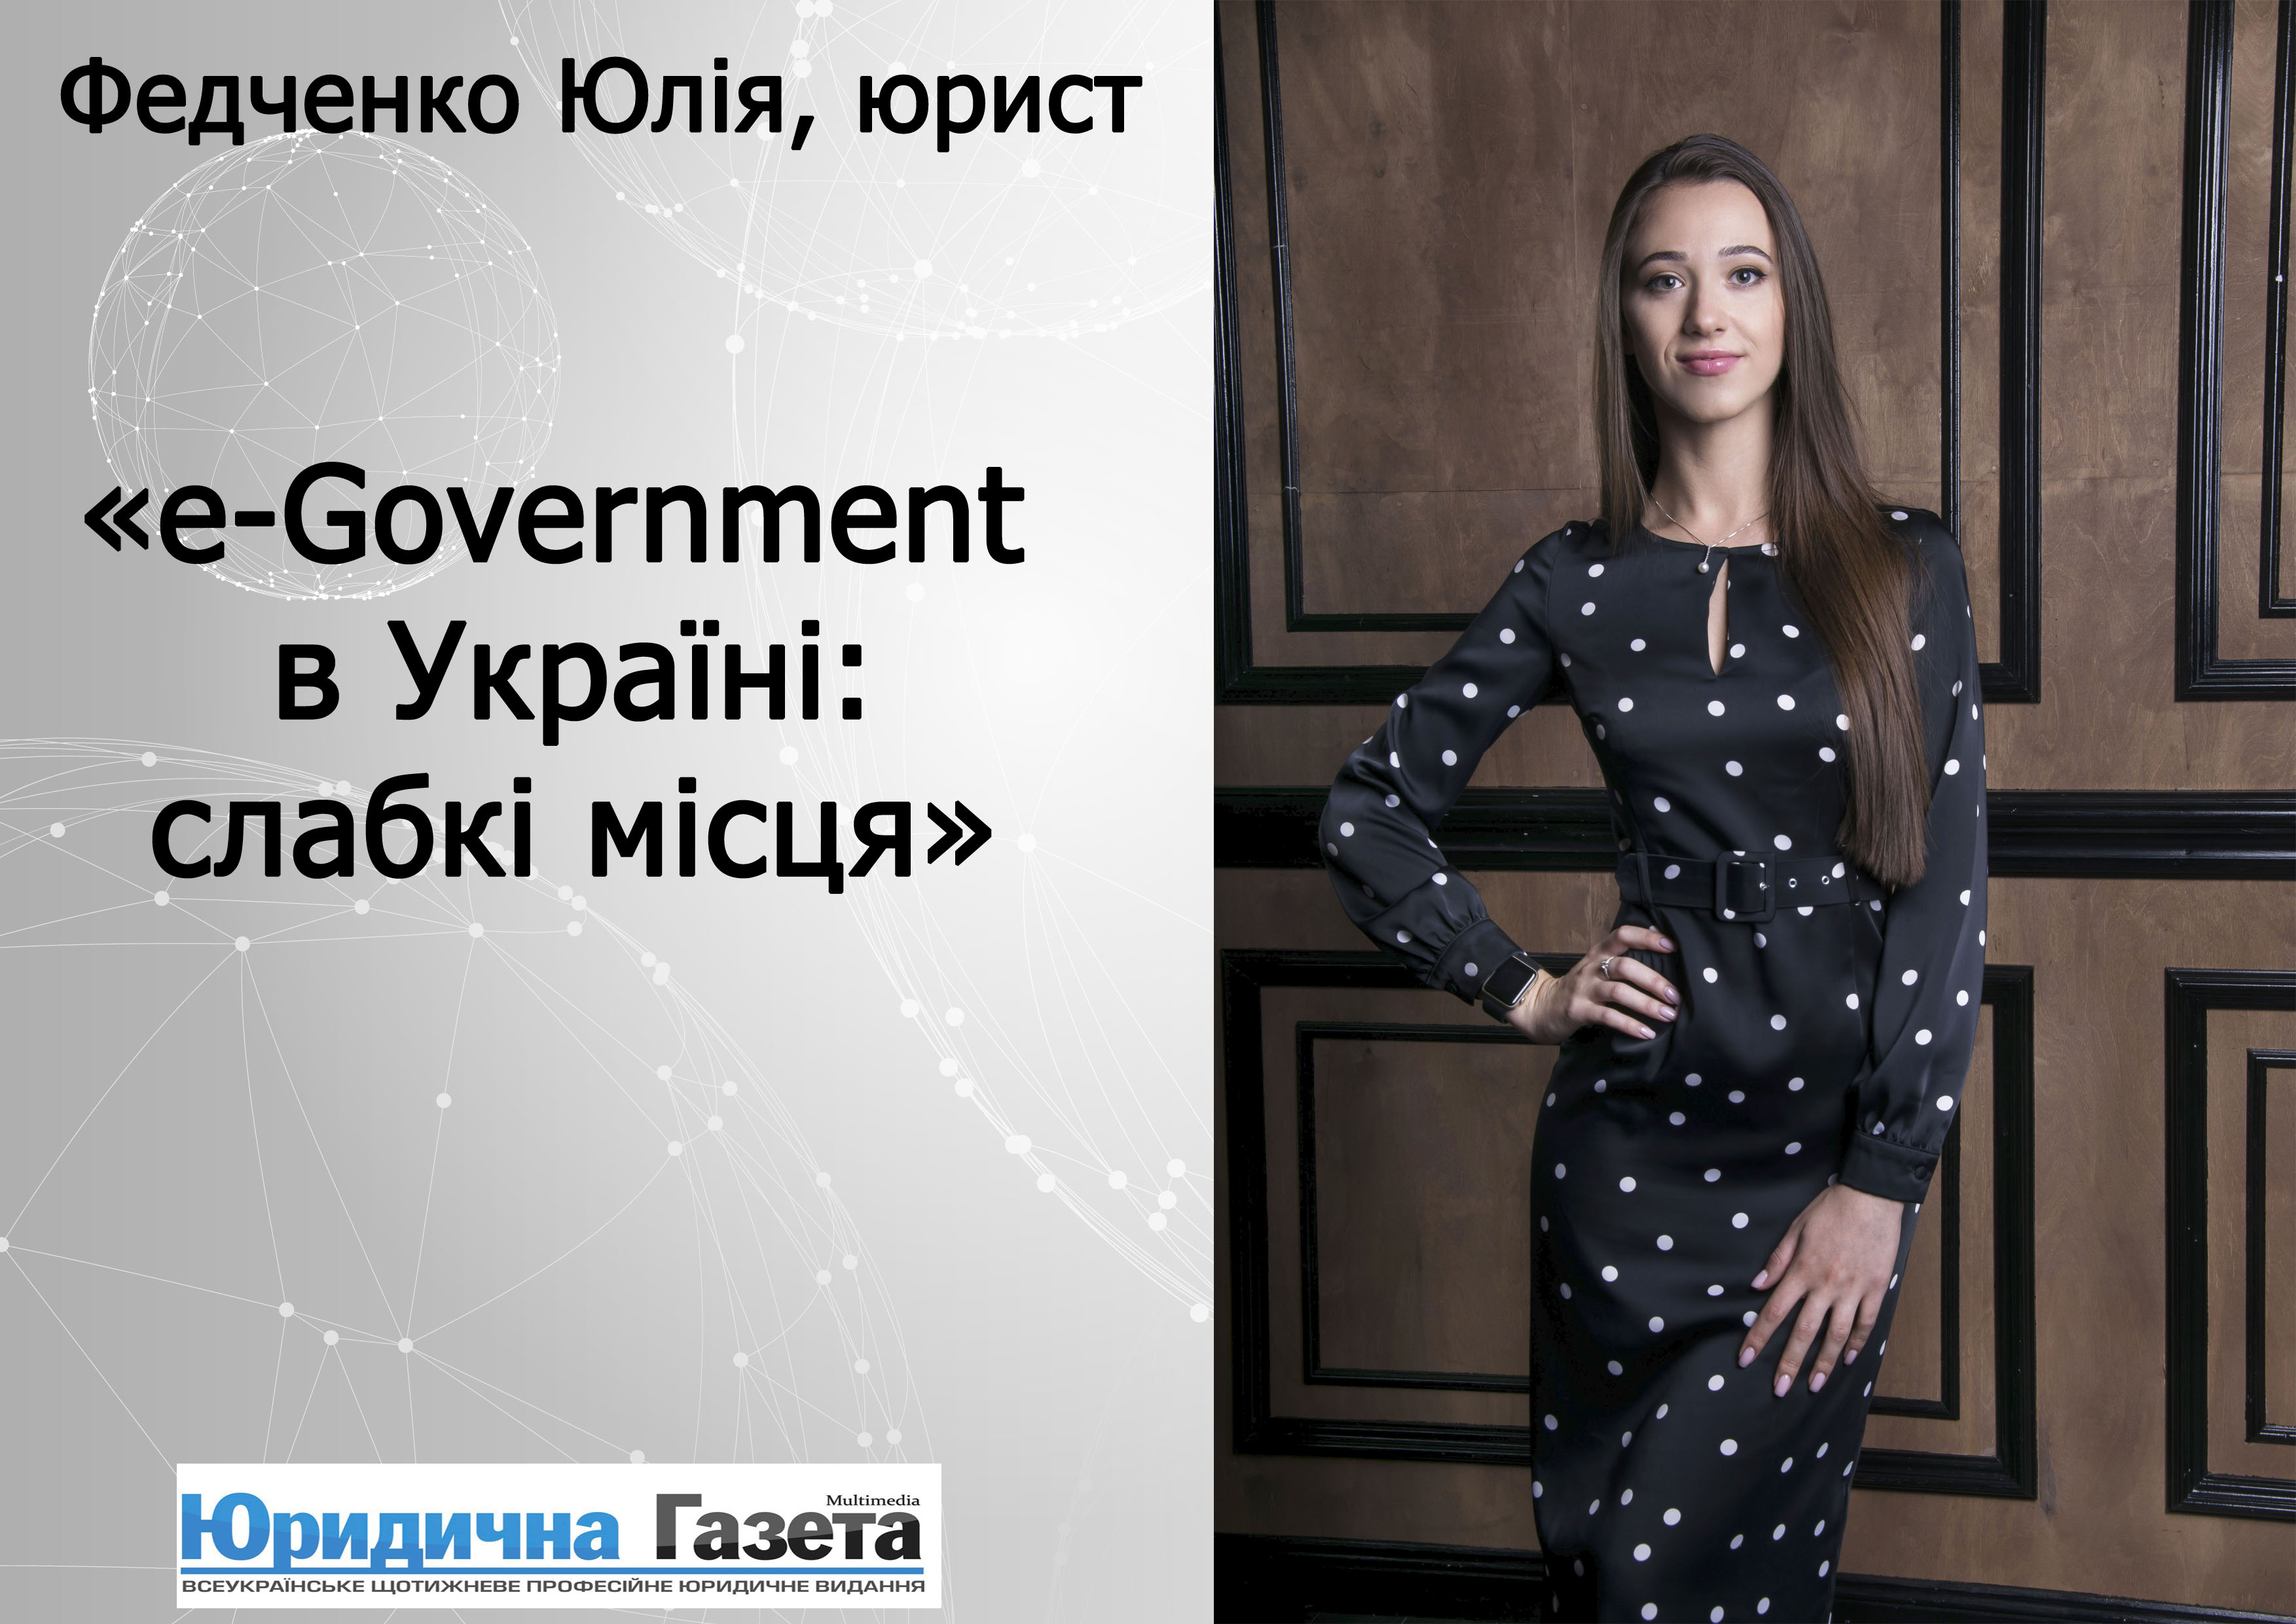 e-Government in Ukraine: weaknesses